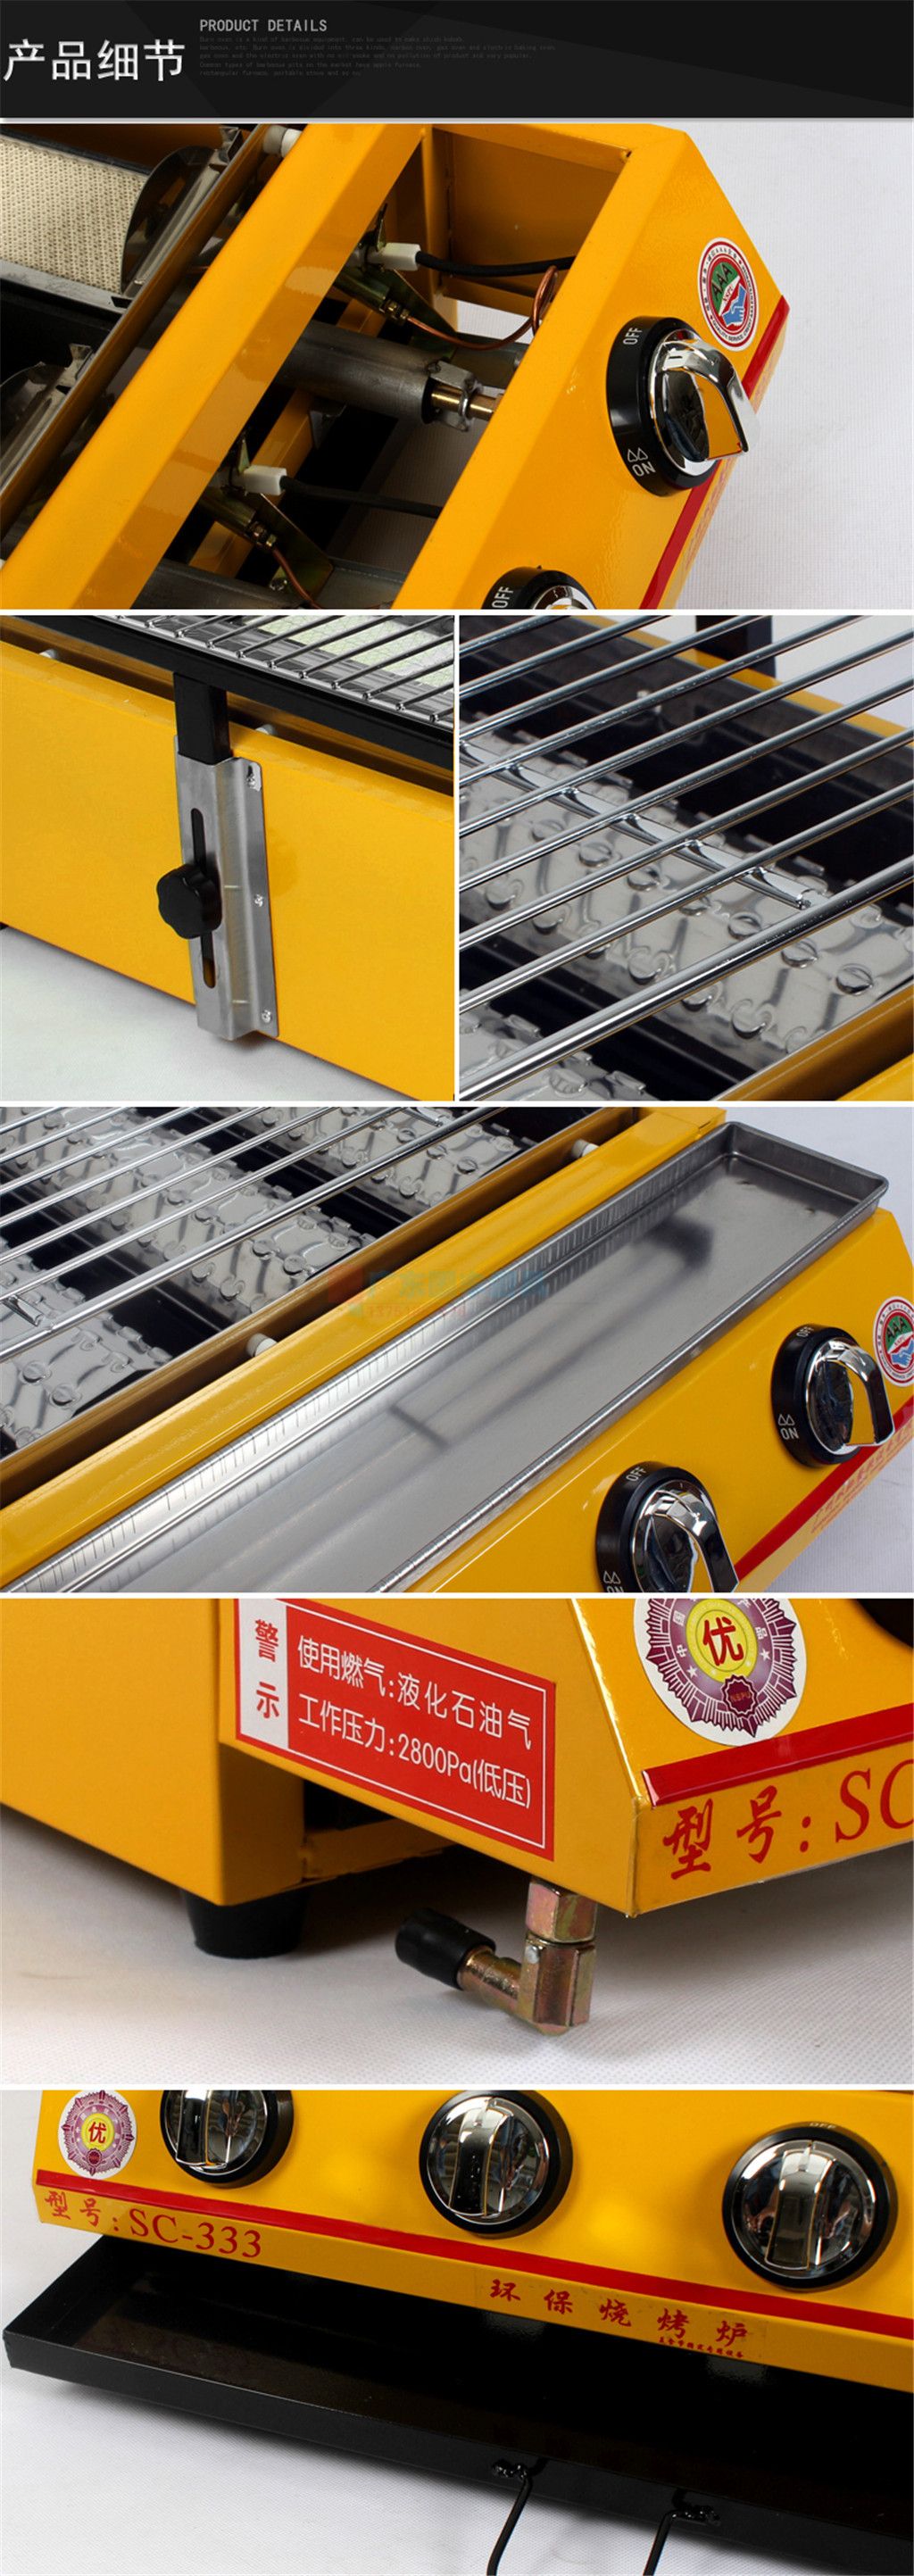 正品双驰SC-333大六头燃气烧烤炉商用烧烤炉新型环保烤炉烤生蚝炉